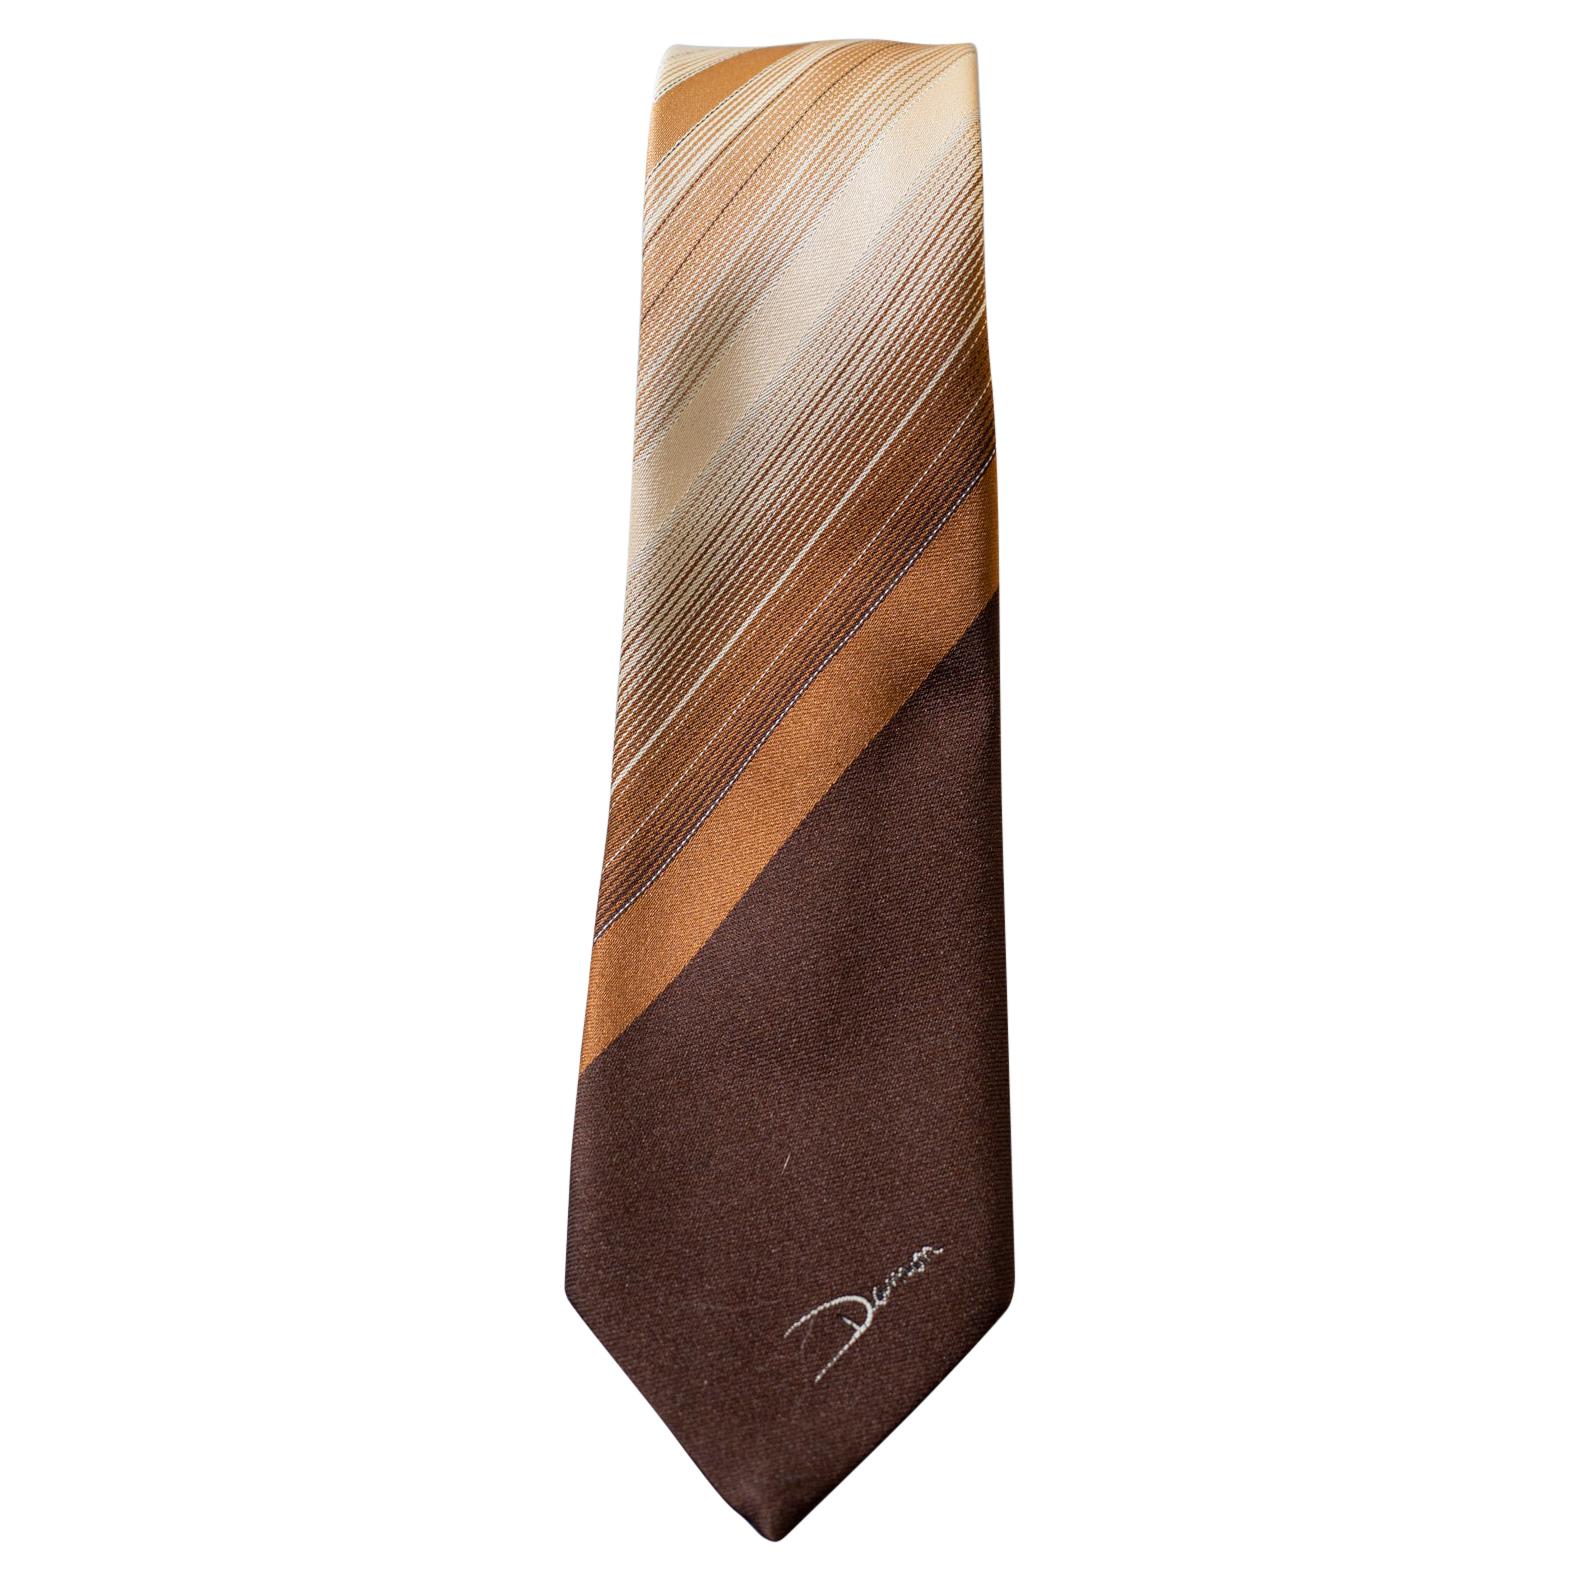 Cravate vintage 100 % soie marron signée Damon 